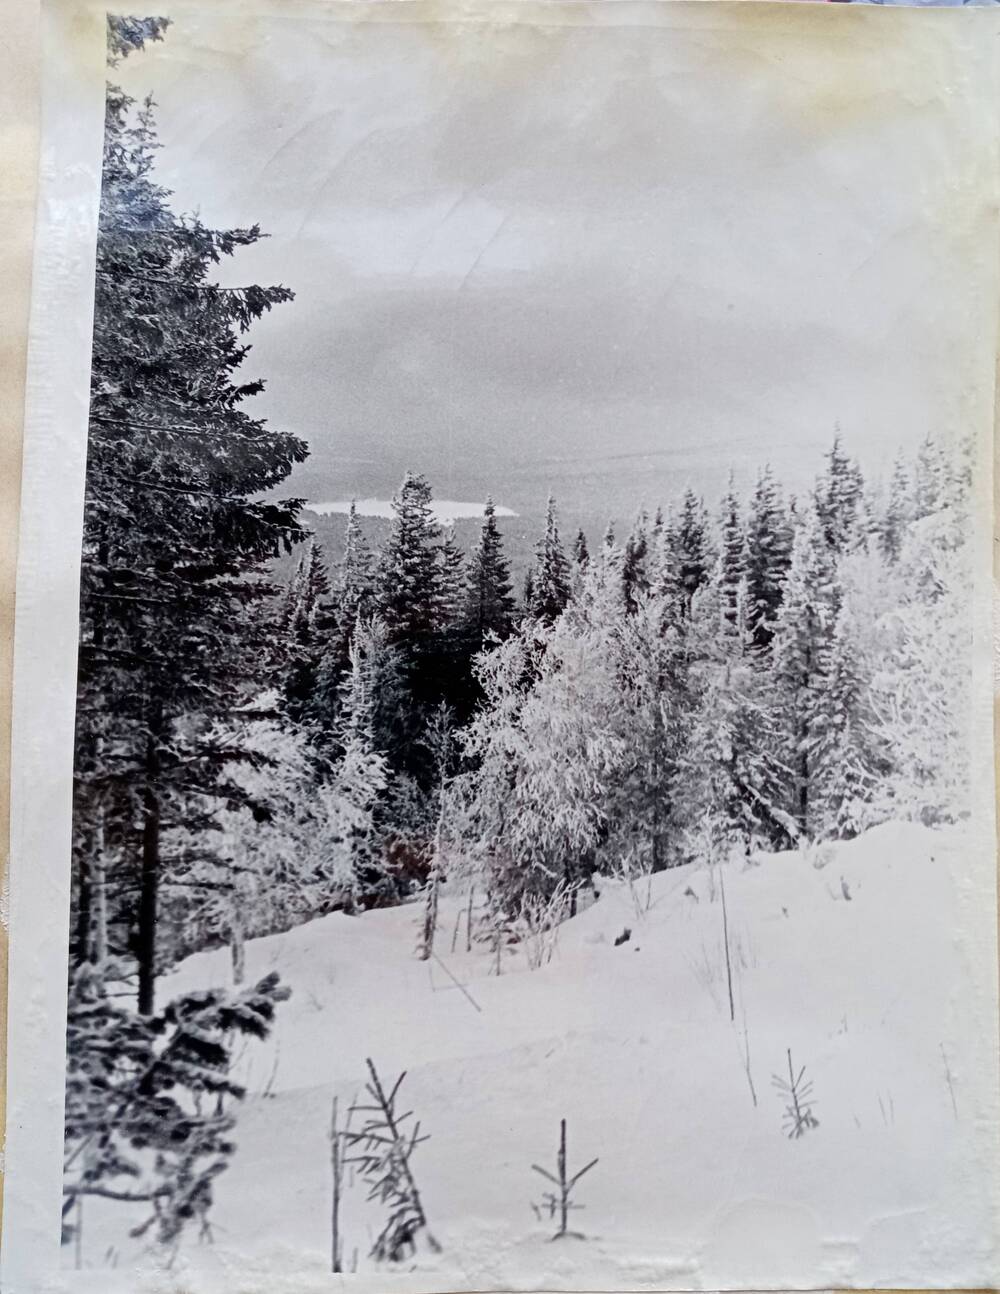 Фото из альбома по истории развития лыжного спорта в Н. Тагиле с 1926 года. У перепада «Поглядовай» на горе Белой.